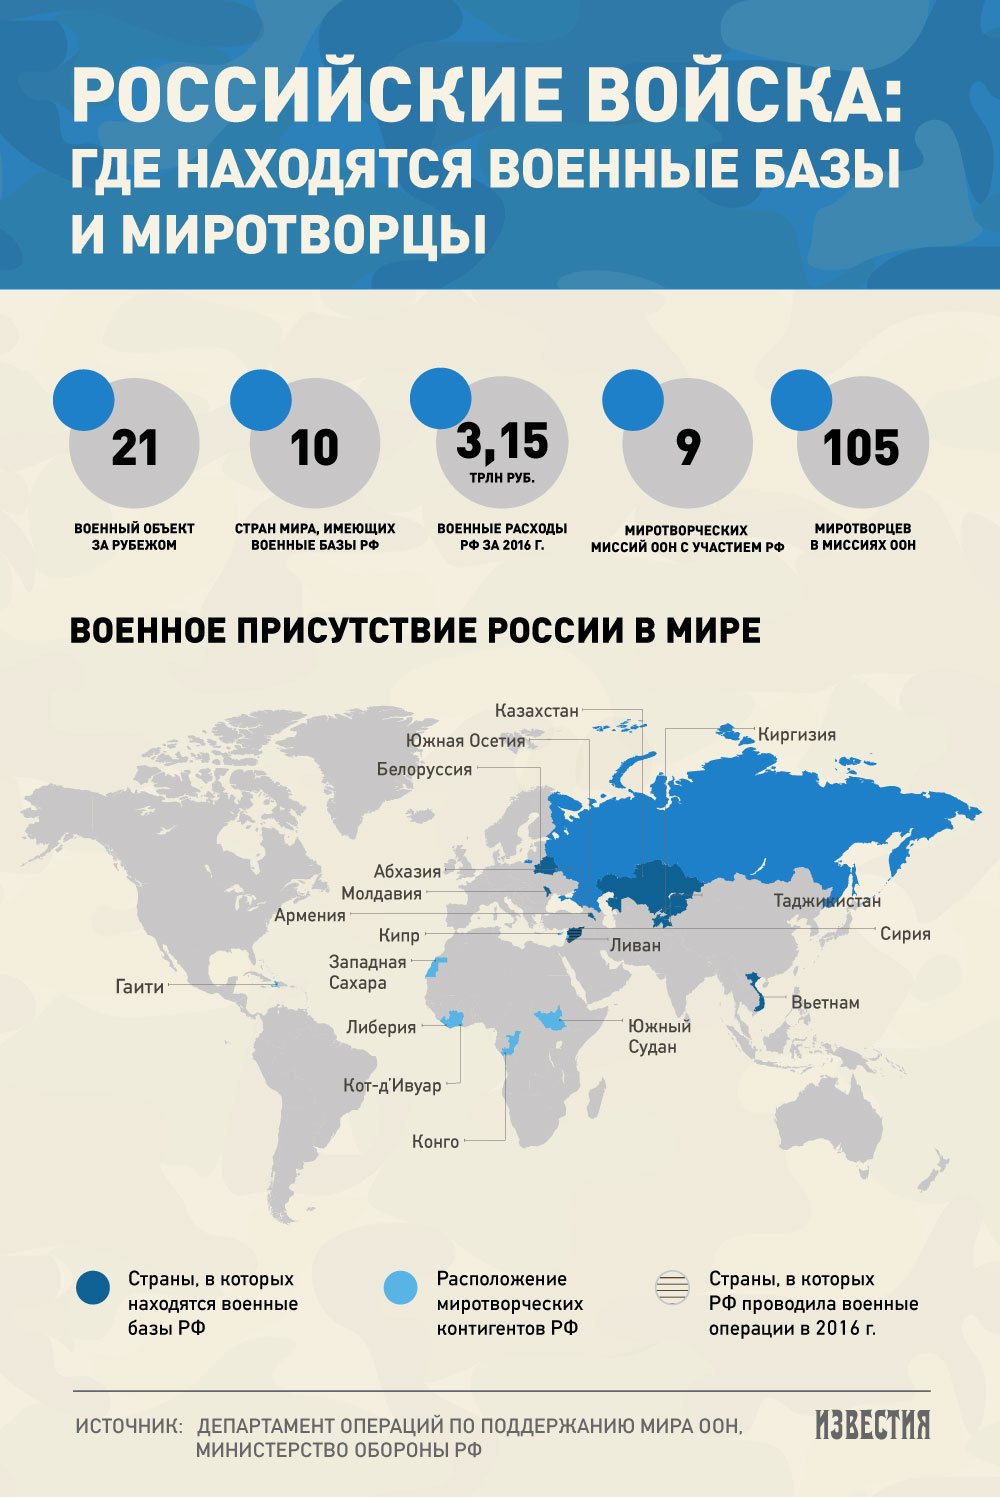 Российские военные базы и миротворцы за рубежом